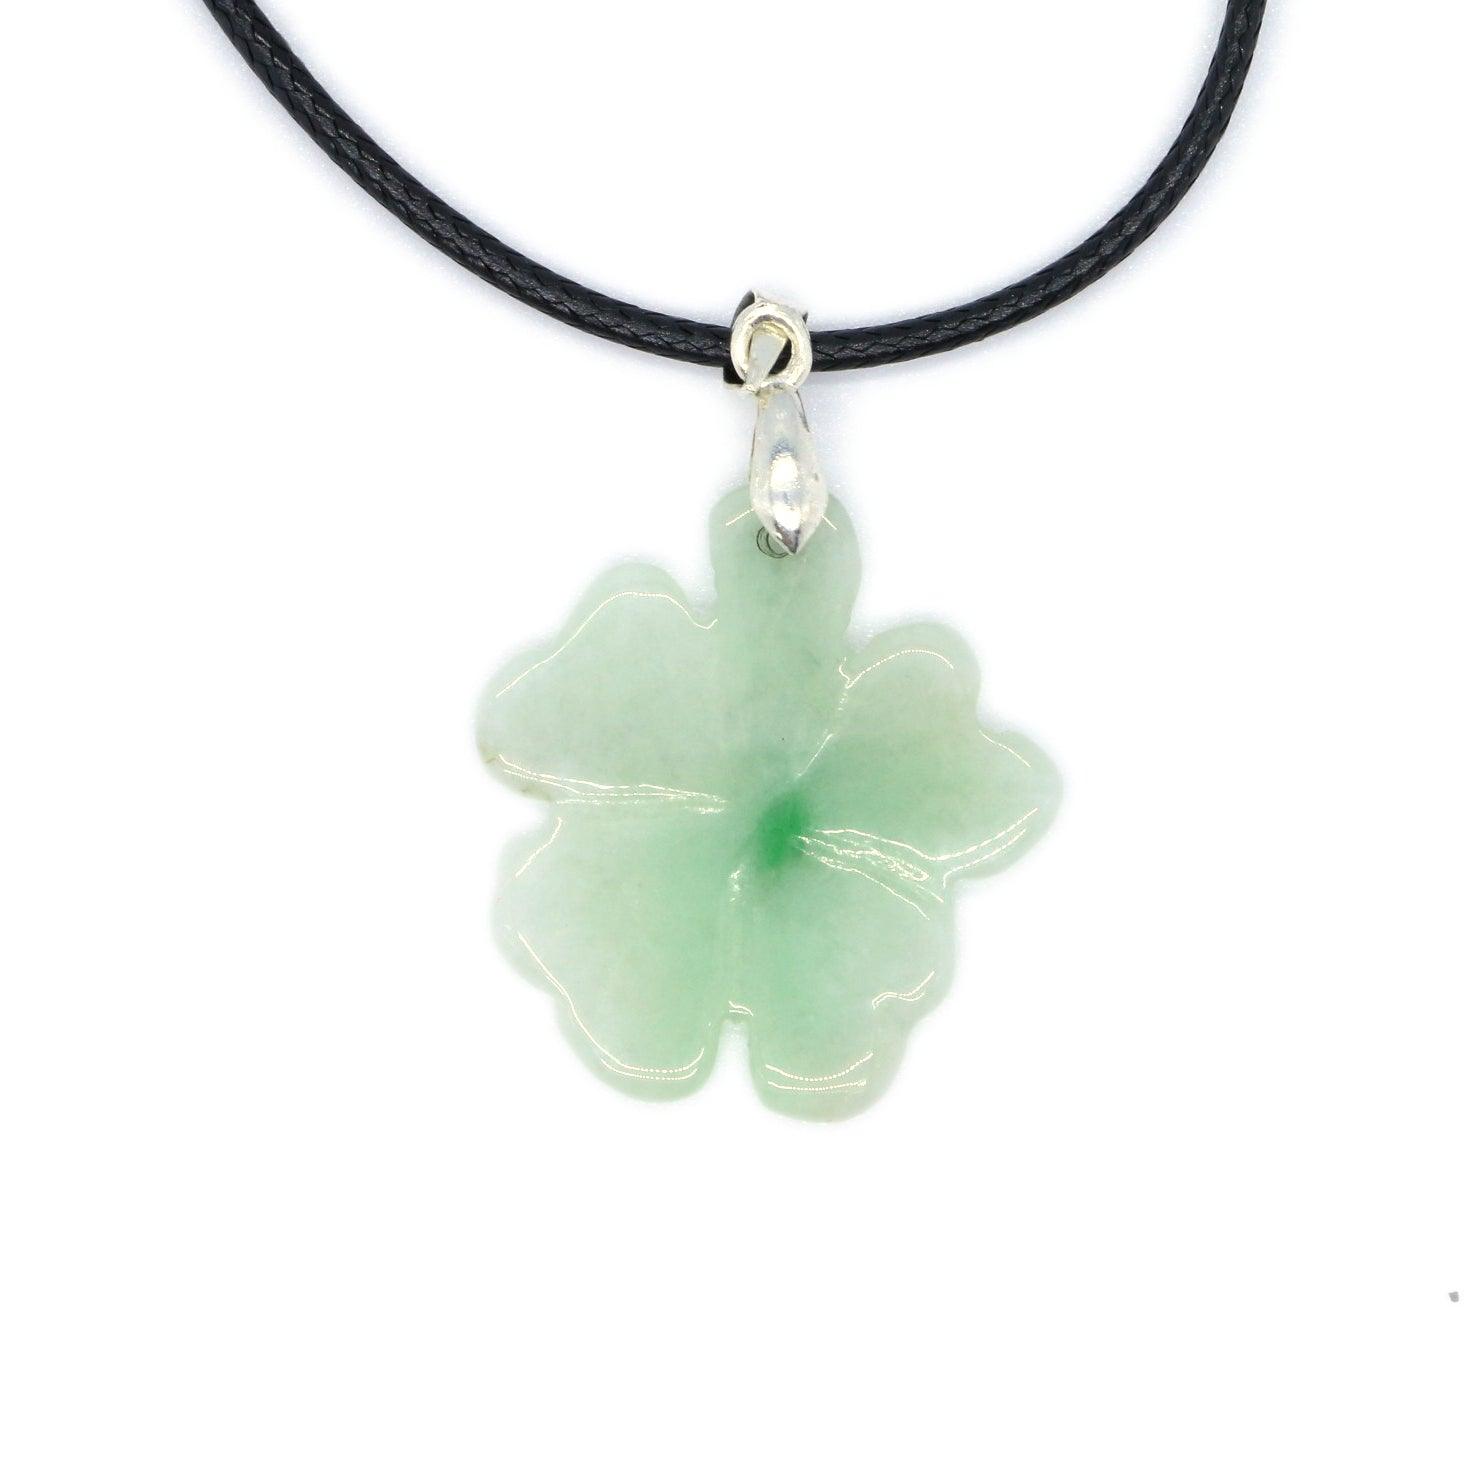 Type A Jadeite Jade Pendants Four-leaf clover Series pe10064 - Jade-collector.com